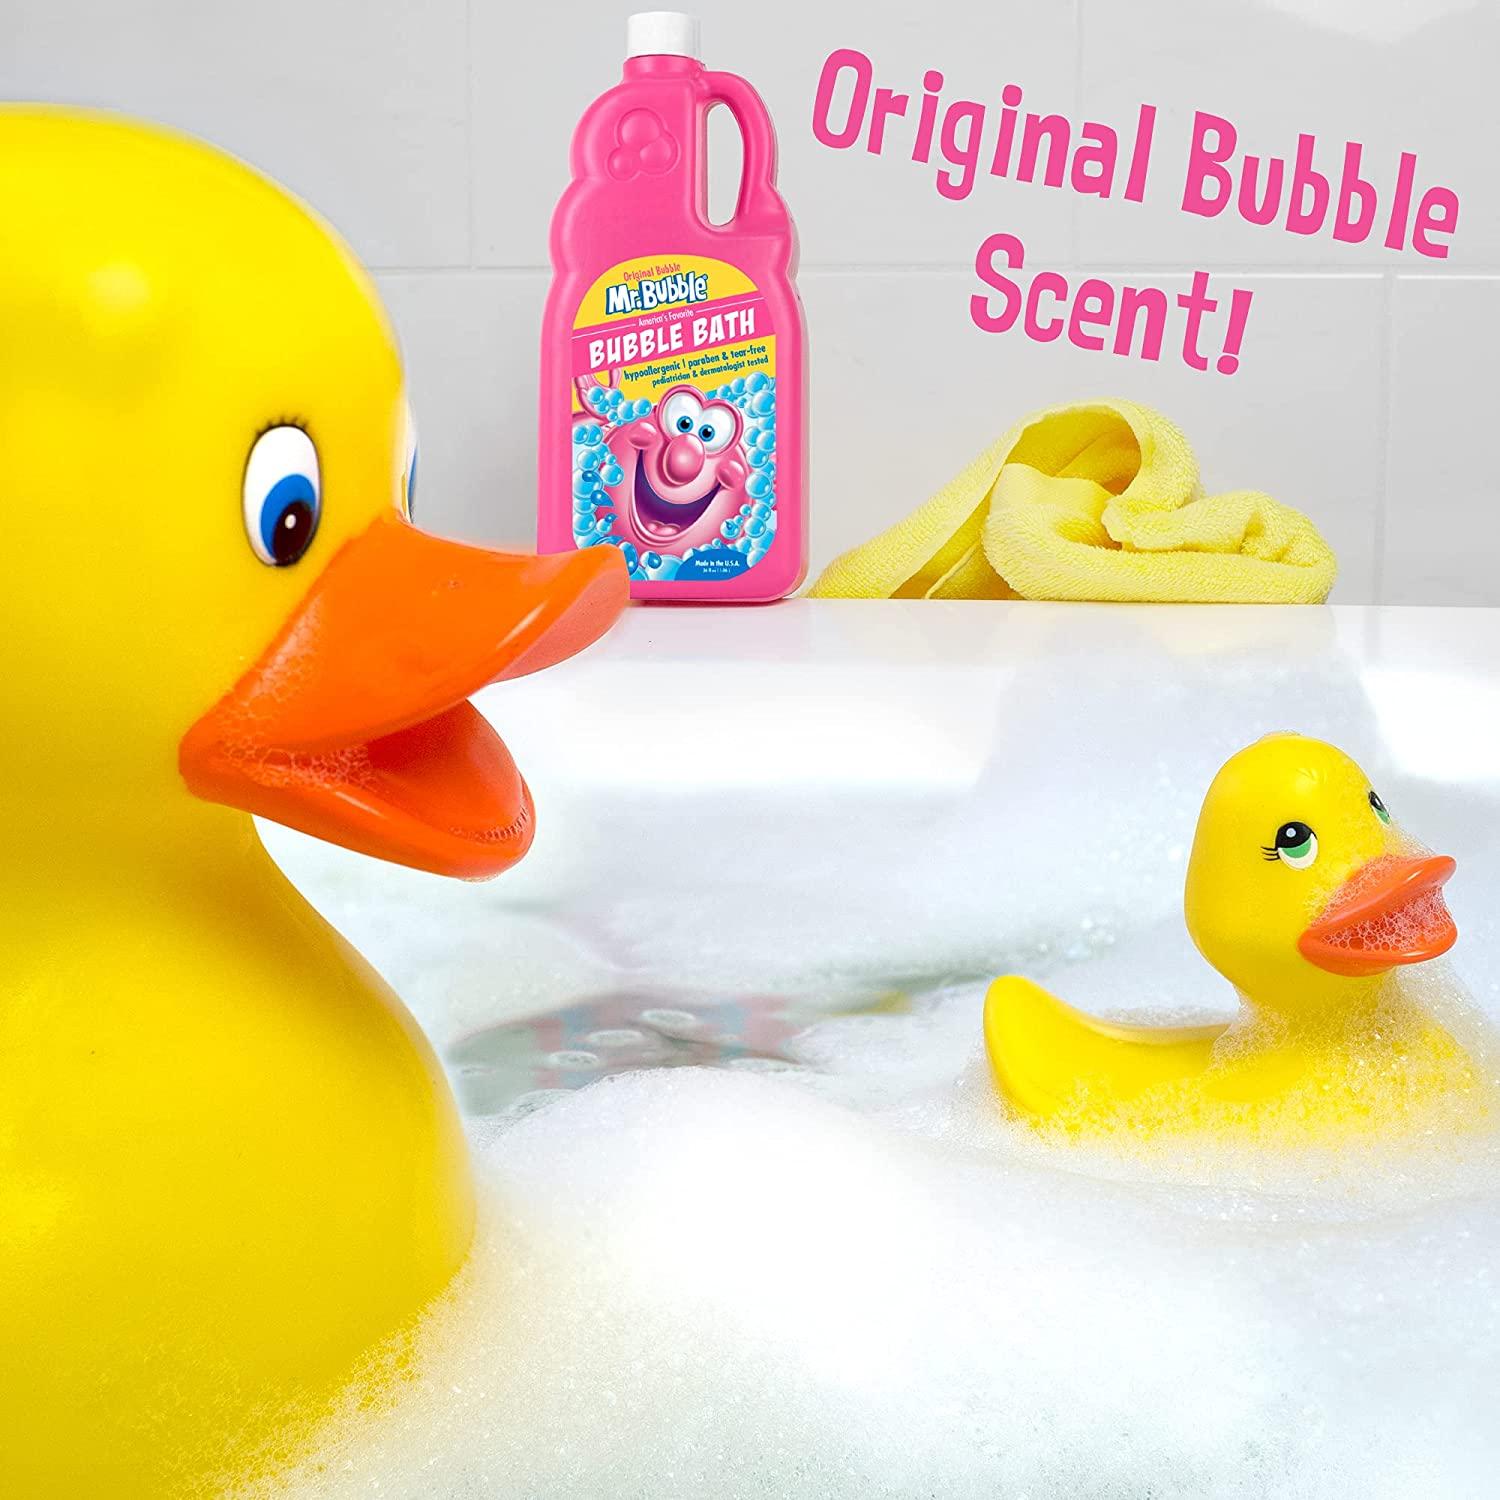  Mr. Bubble Original Bubble Bath - Hypoallergenic, Tear